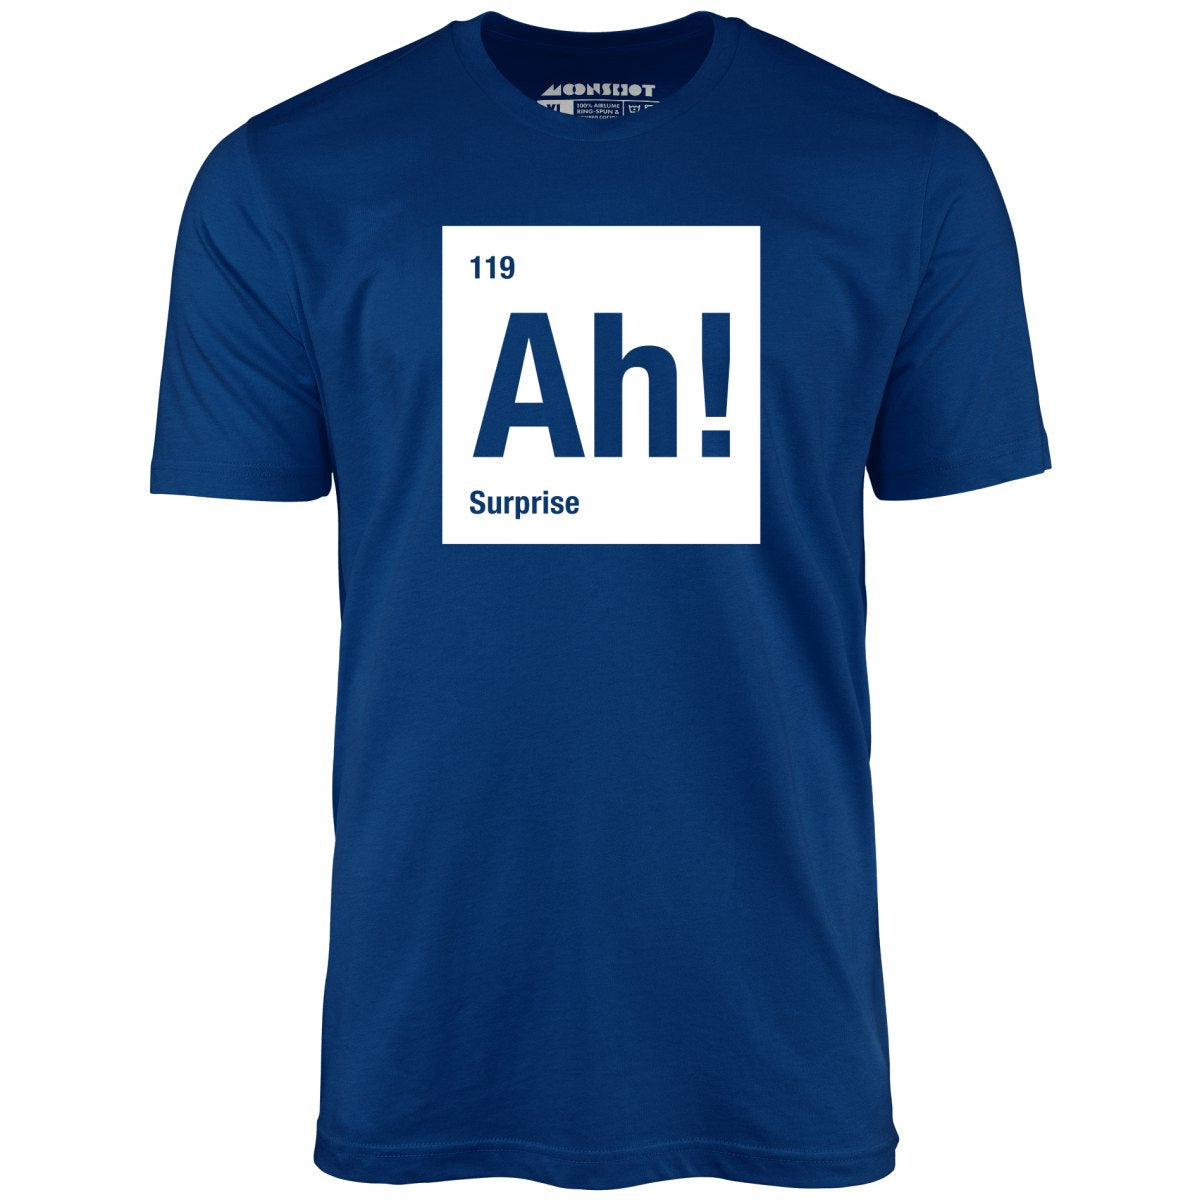 Ah! The Element of Surprise - Unisex T-Shirt